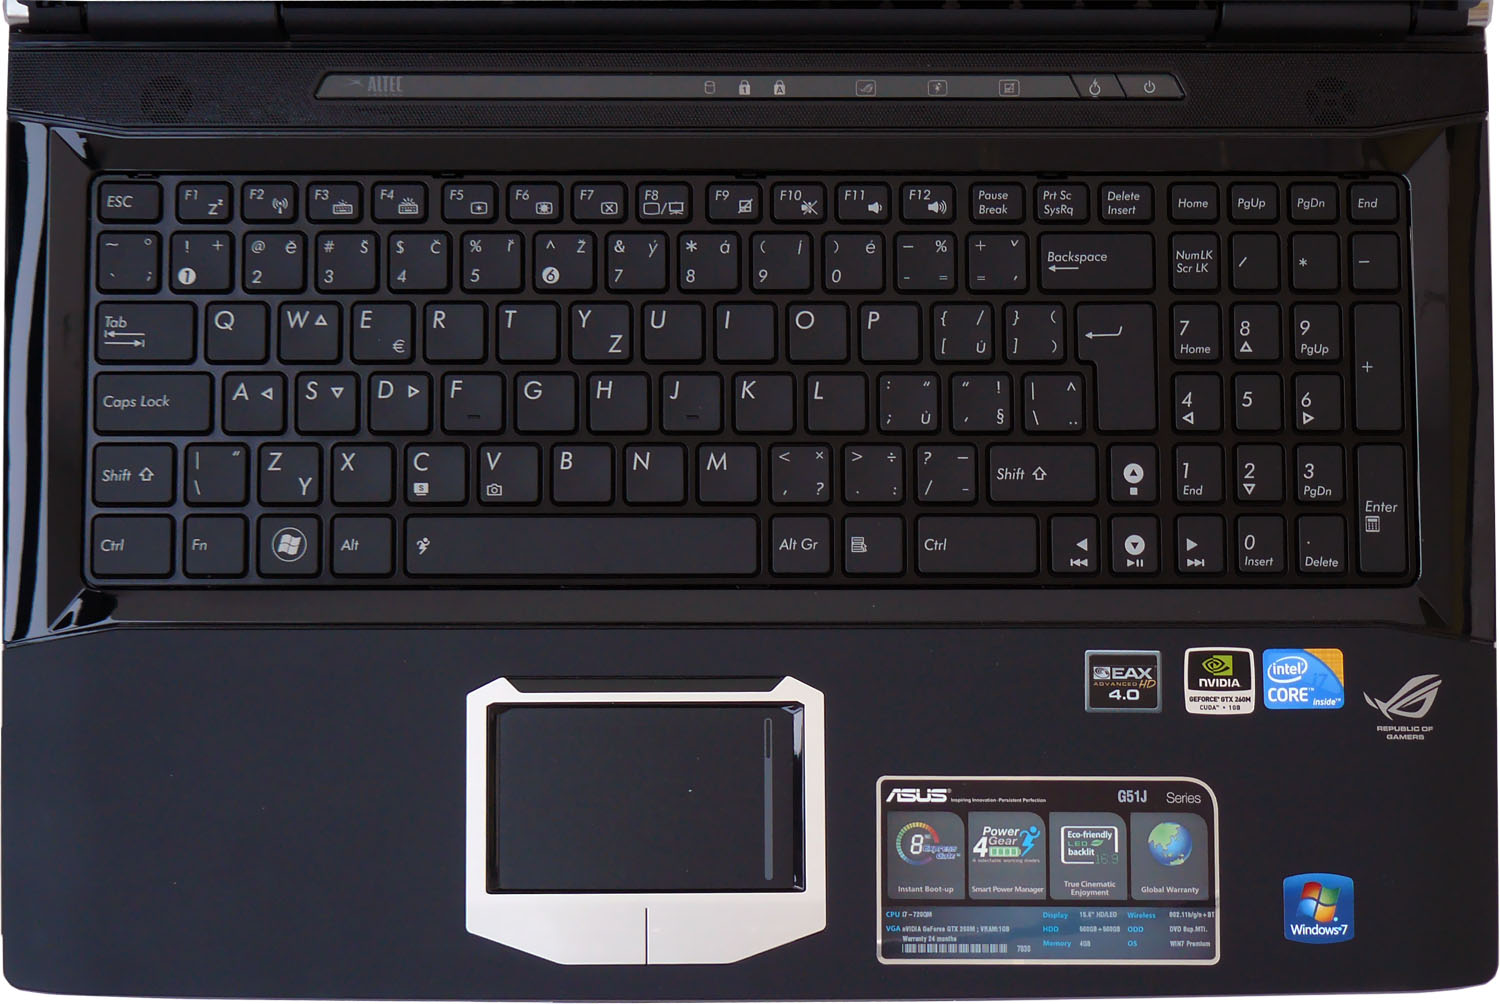 Asus G51J — Notebook s 3D displejem